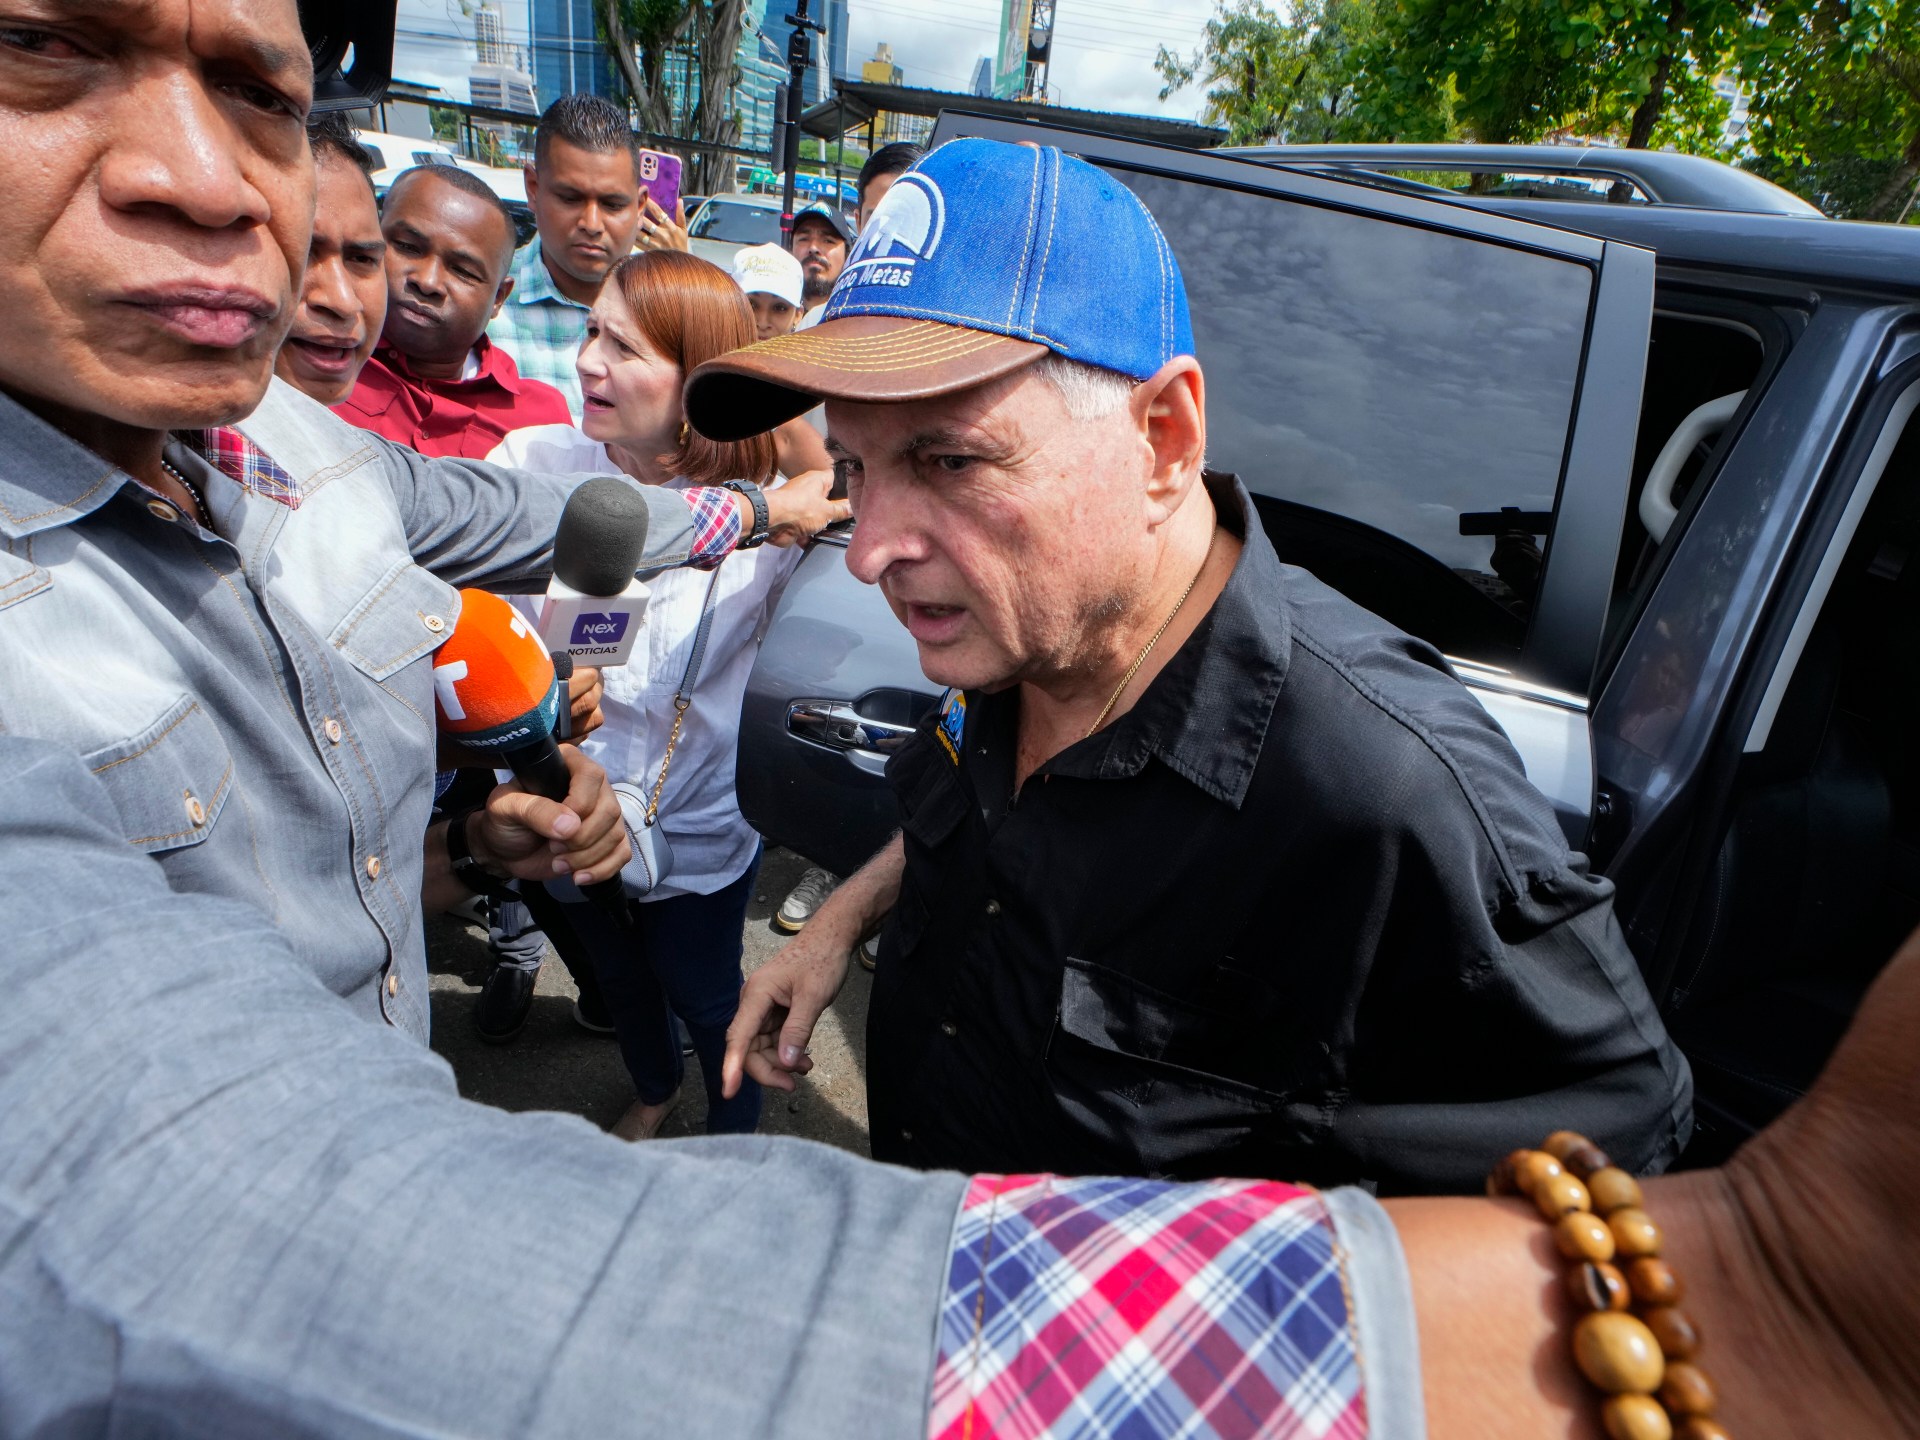 Expresidente de Panamá condenado a 10 años de prisión por lavado de dinero  noticias de la corte